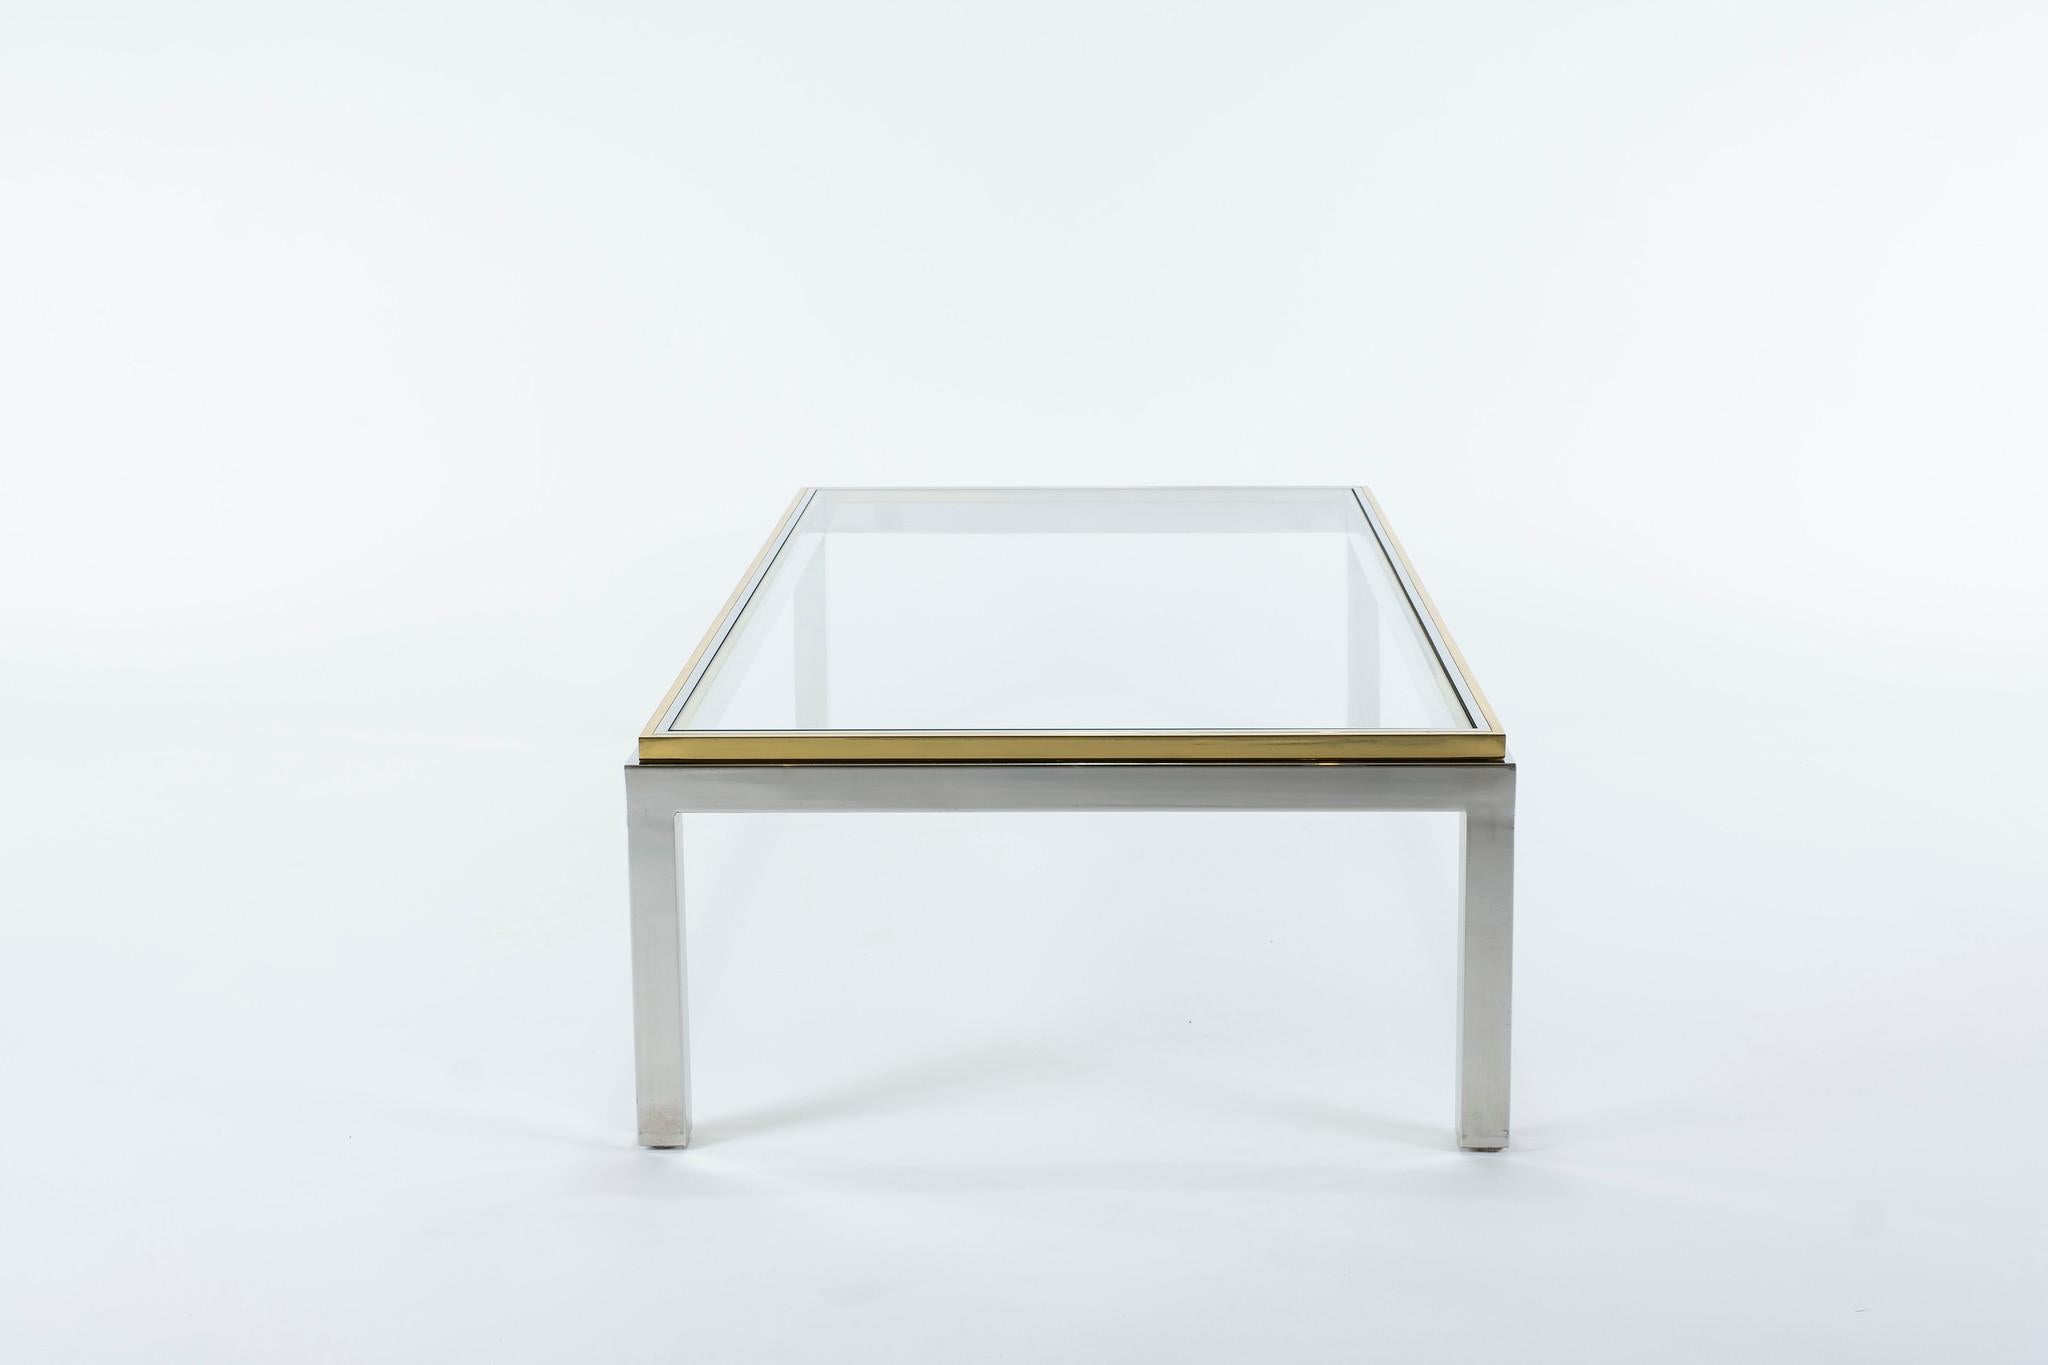 La table basse classique Willy Steele modèle Flaminia se caractérise par un cadre en acier poli avec des bords en laiton et un plateau en verre.